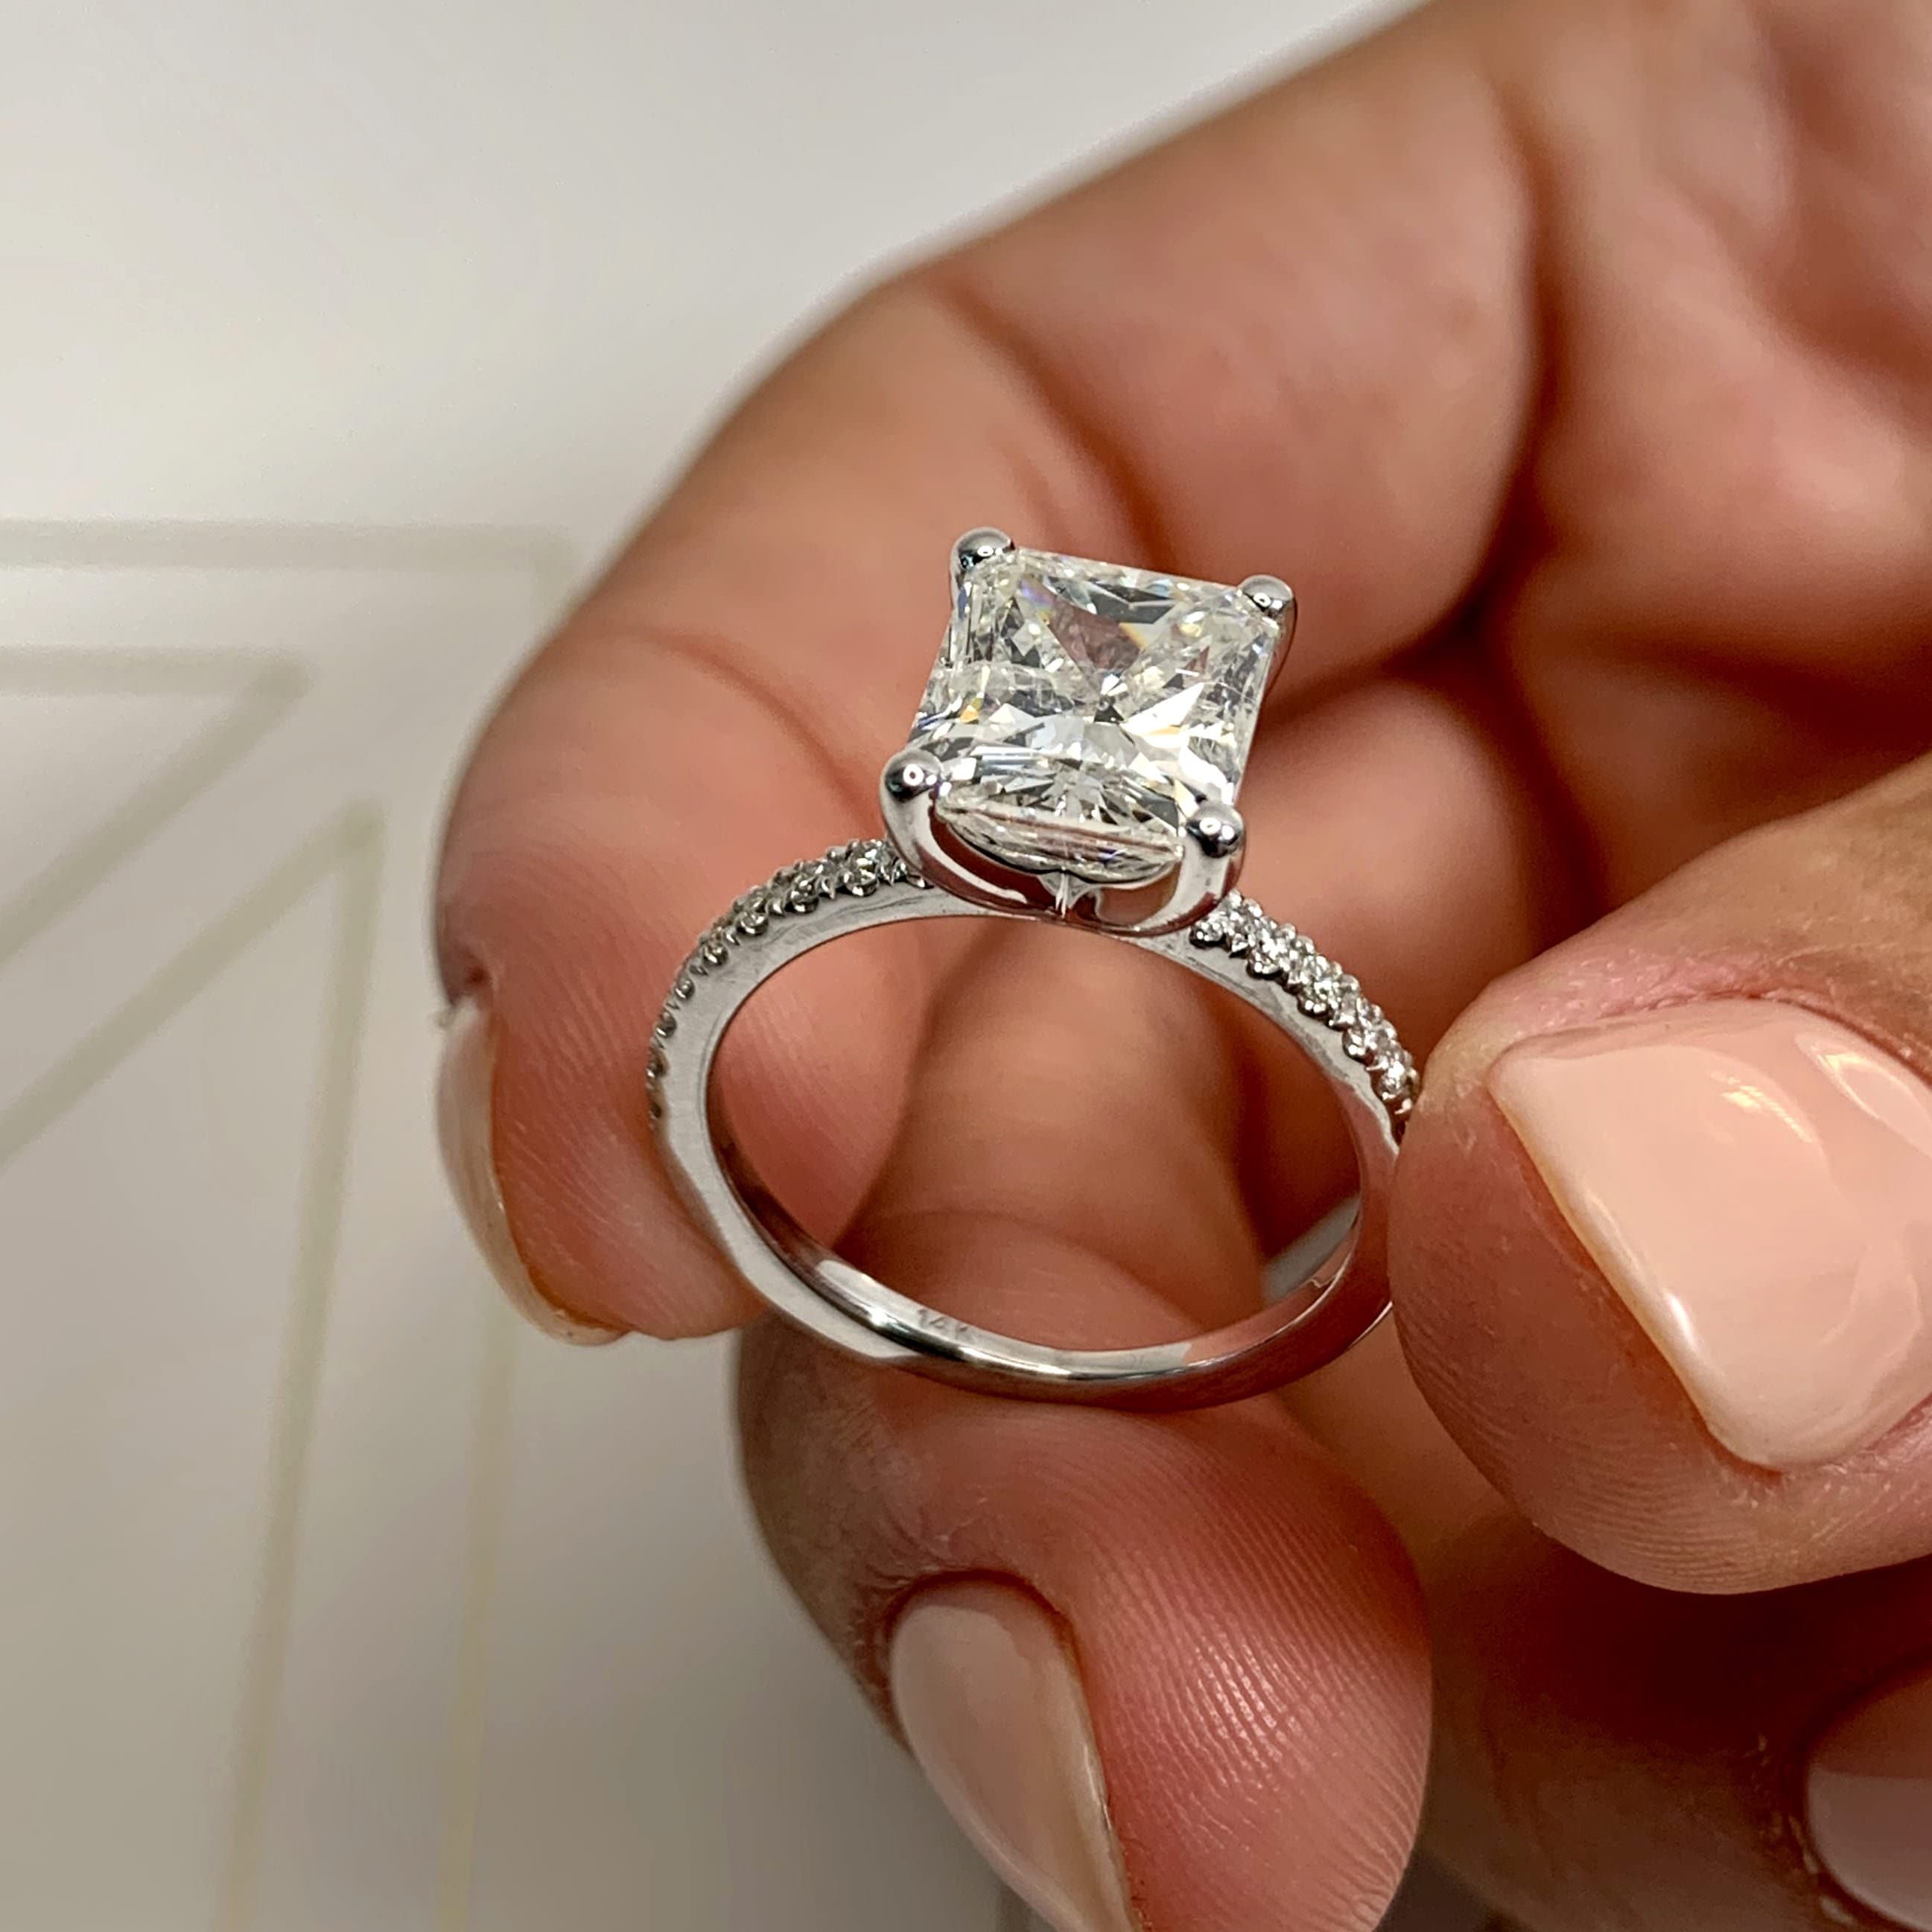 Audrey Diamond Engagement Ring   (3.30 Carat) -18K White Gold